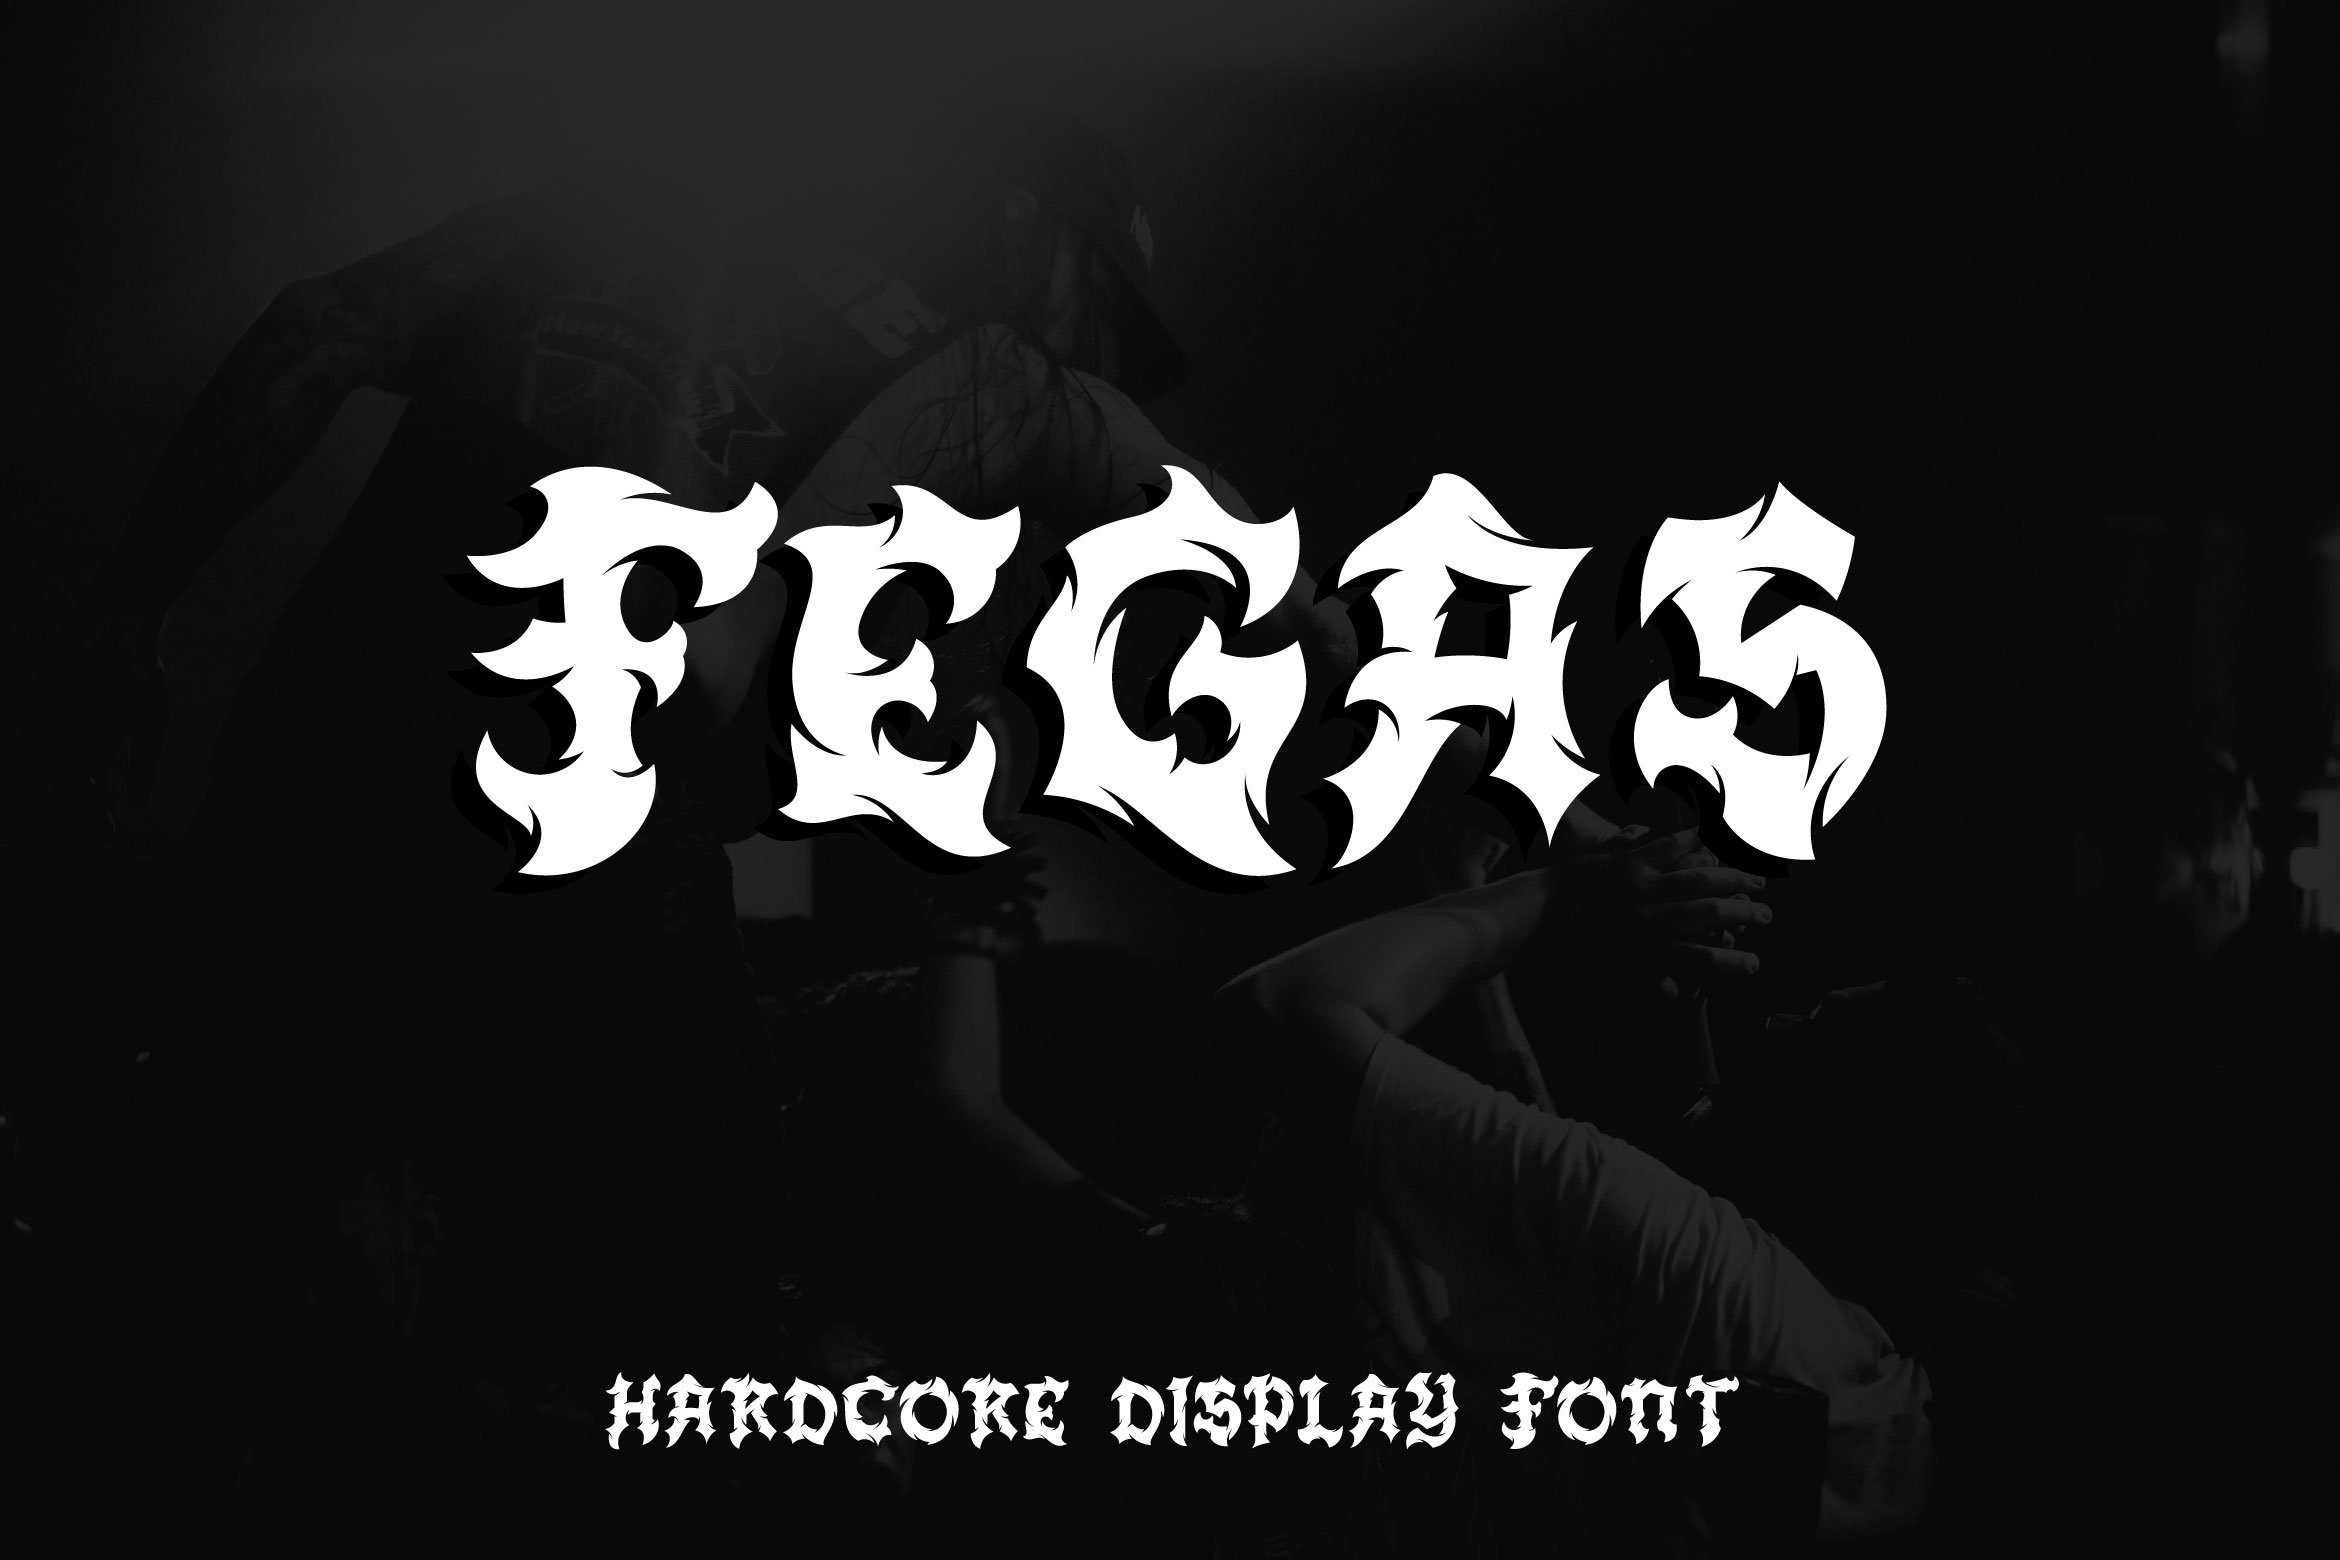 Fegas - Blackletter Font cover image.